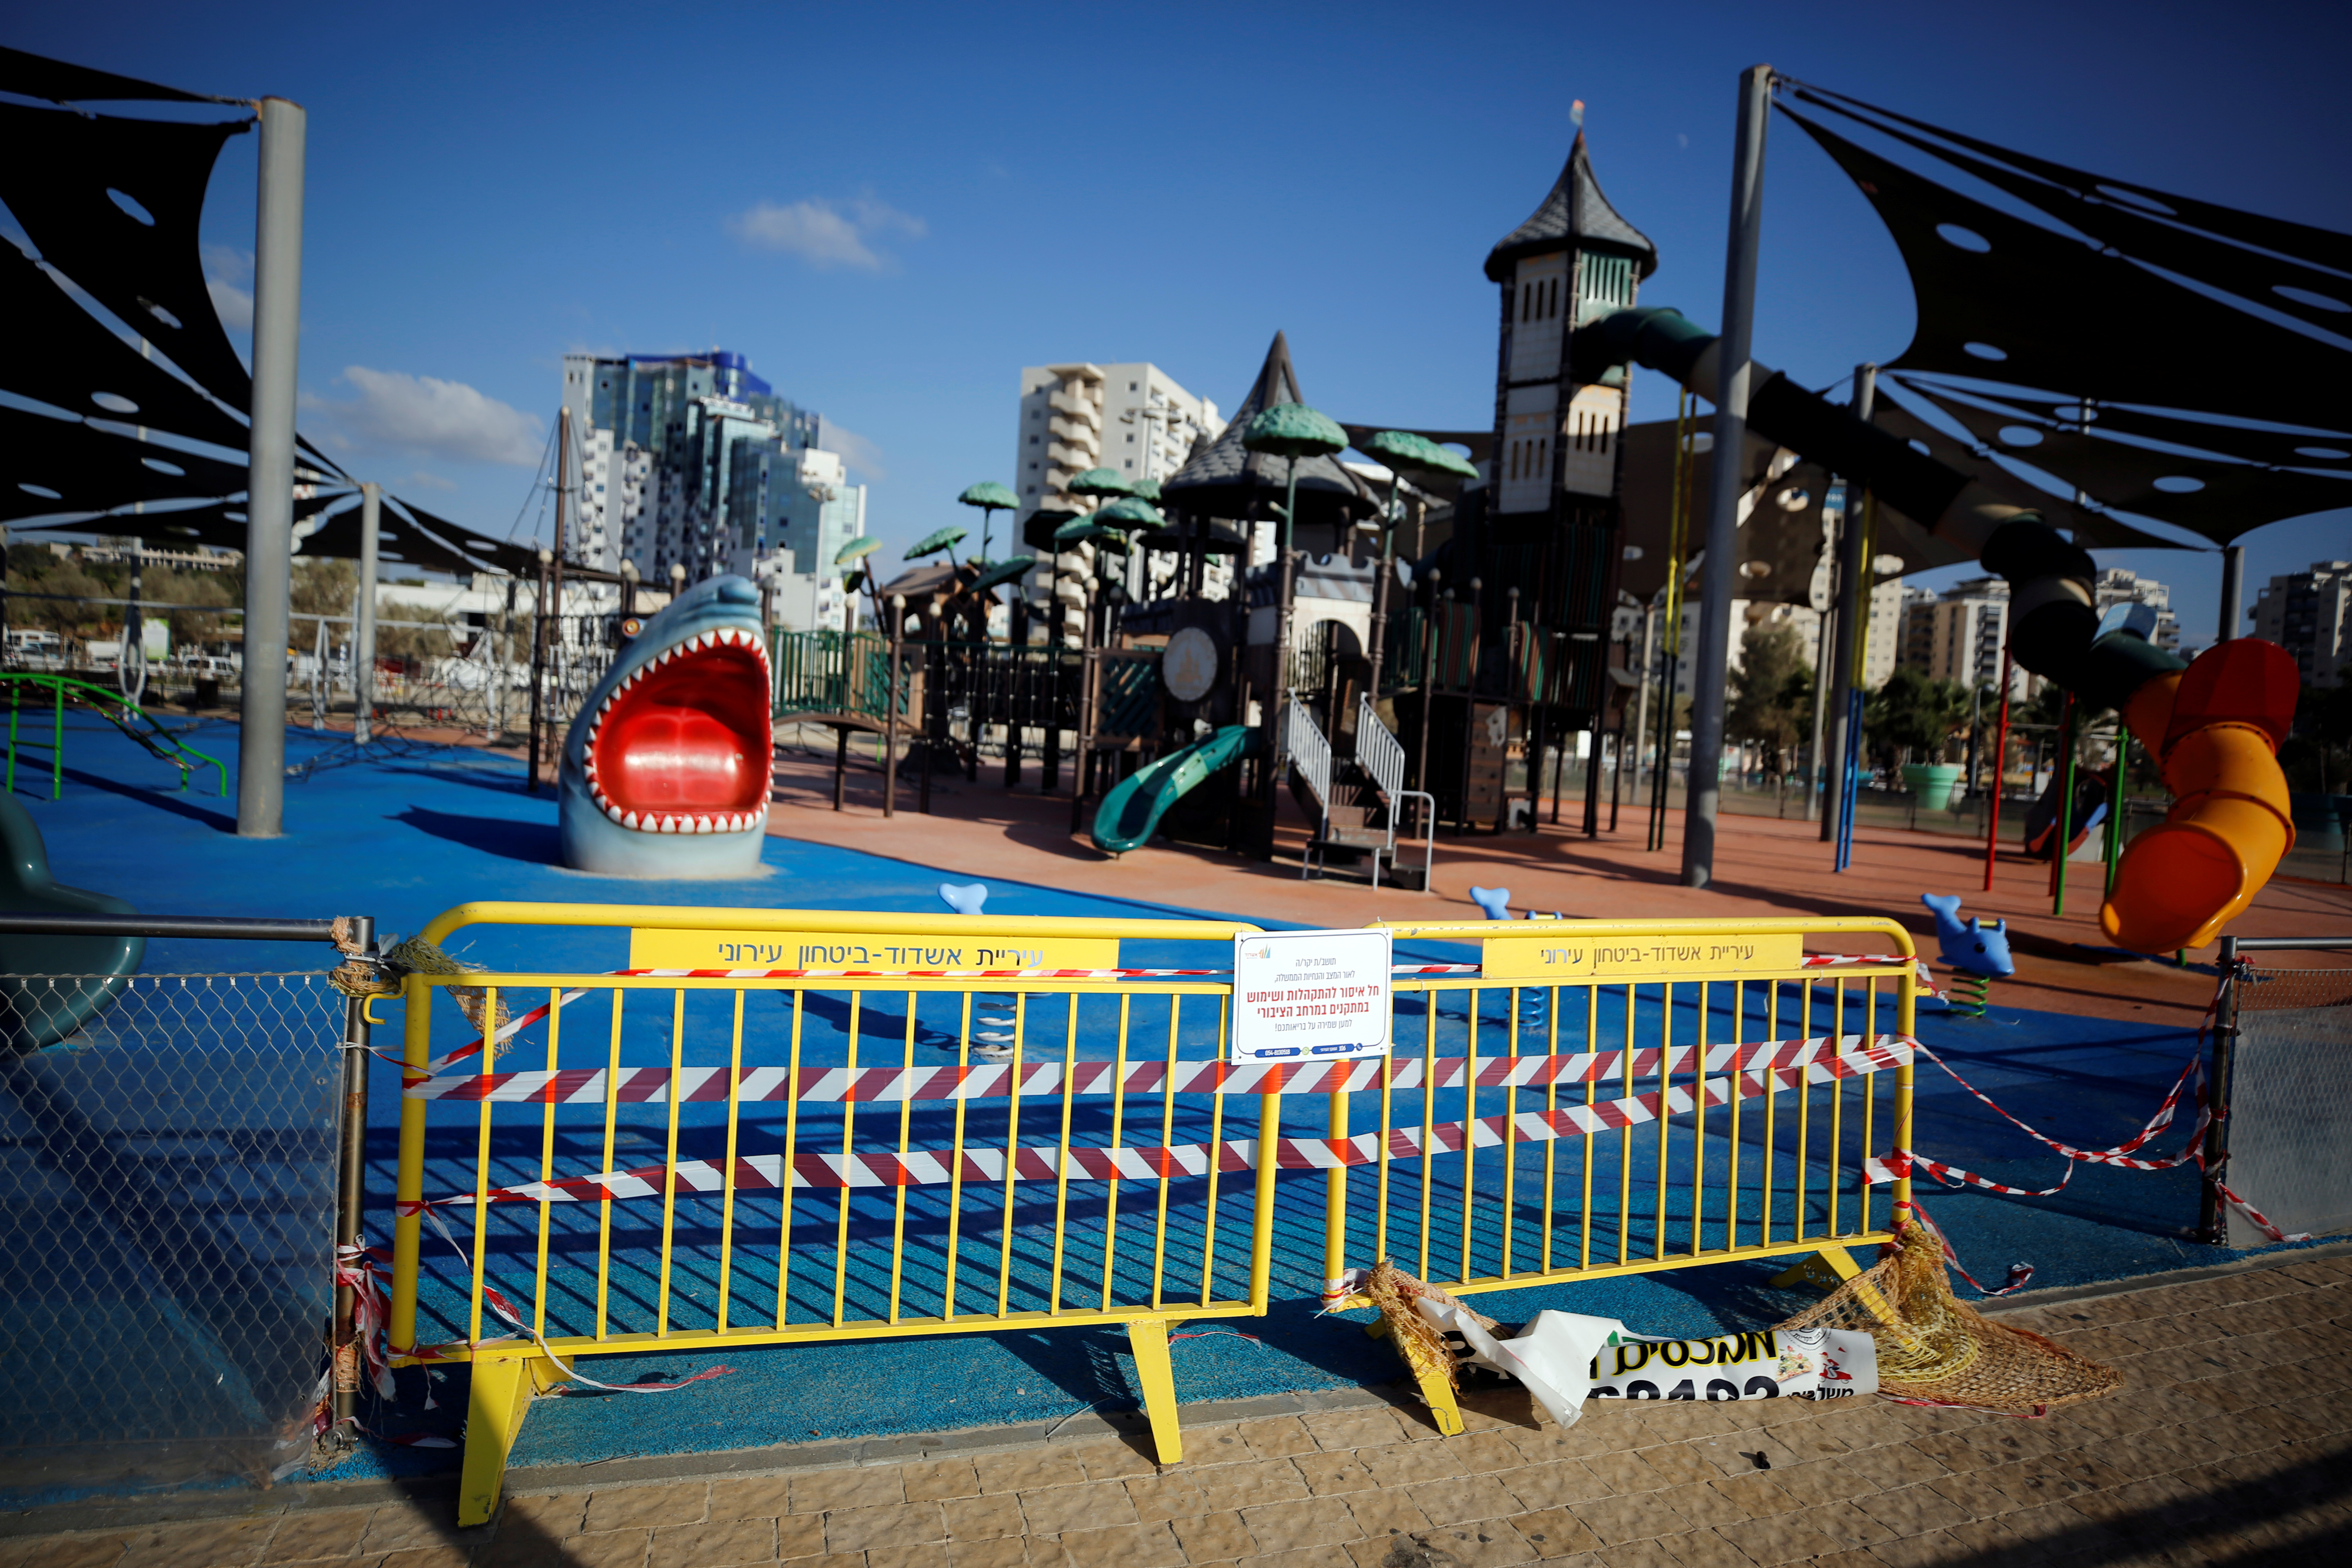 Una plaza de juegos en Israel, cerrada debido a las nuevas restricciones impuestas por la pandemia de Covid-19. Foto: REUTERS/Amir Cohen